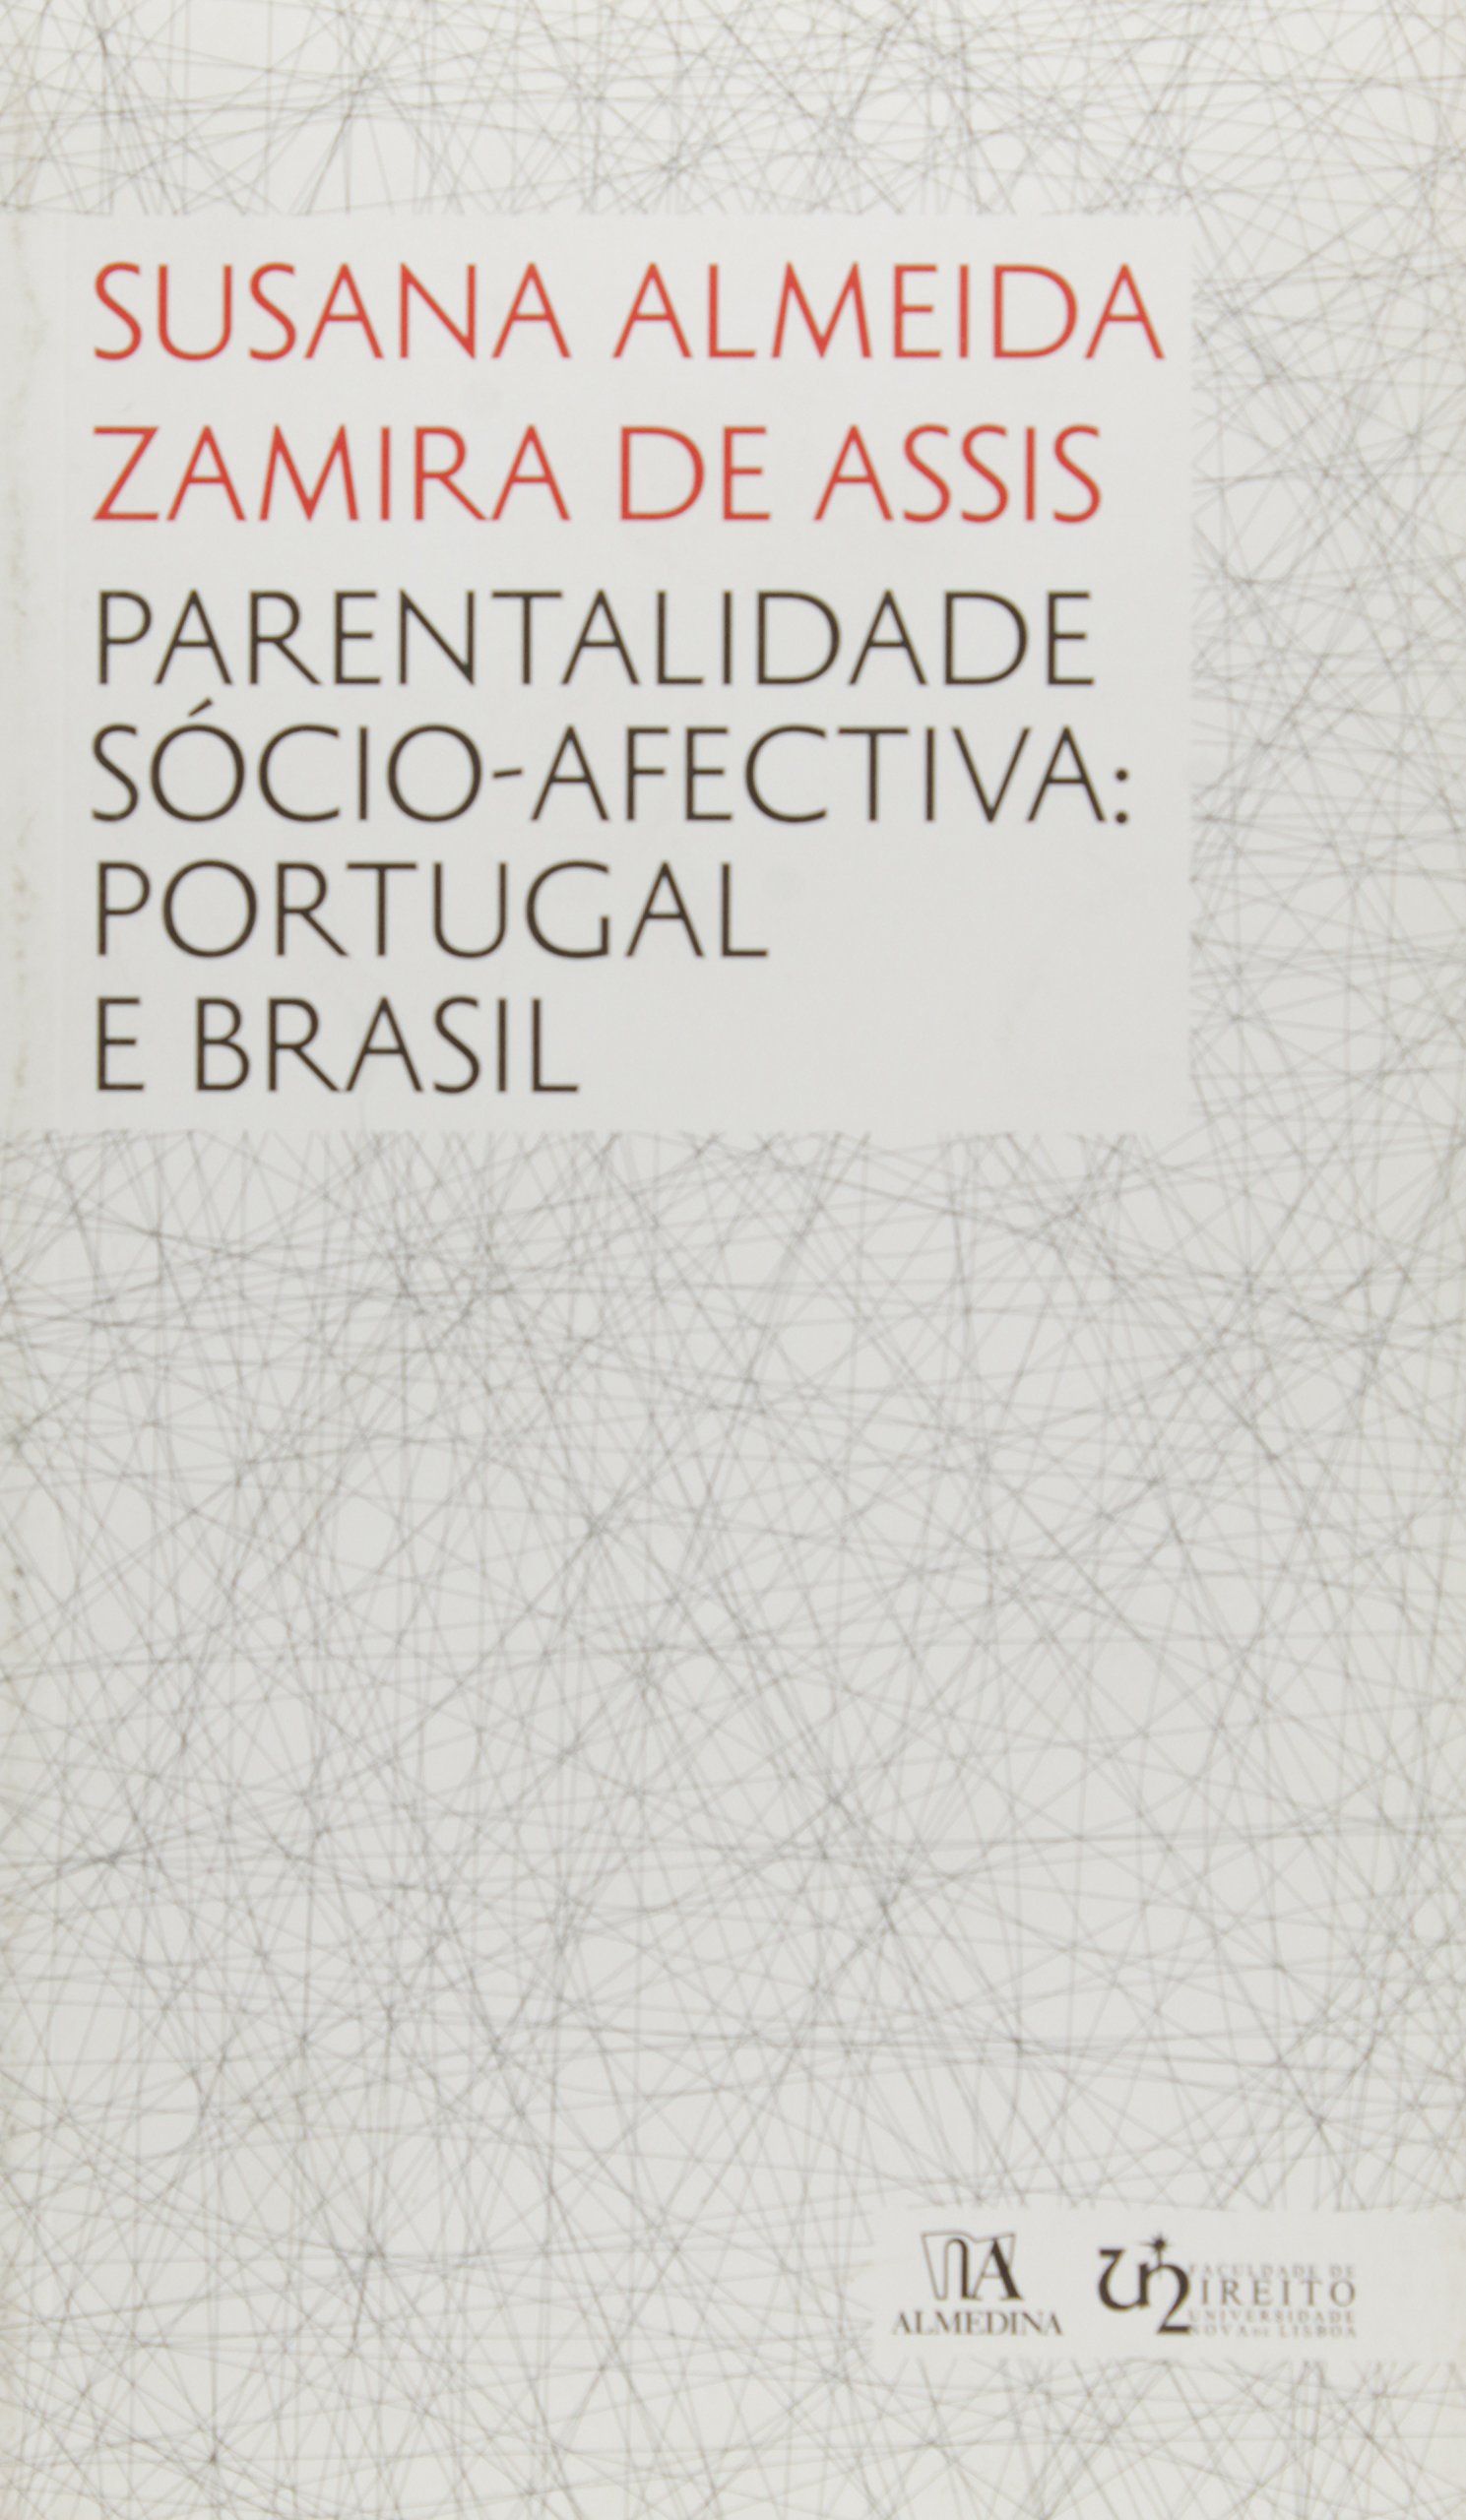 Parentalidade Sócio-Afectiva - Portugal e Brasil - 01Ed/12